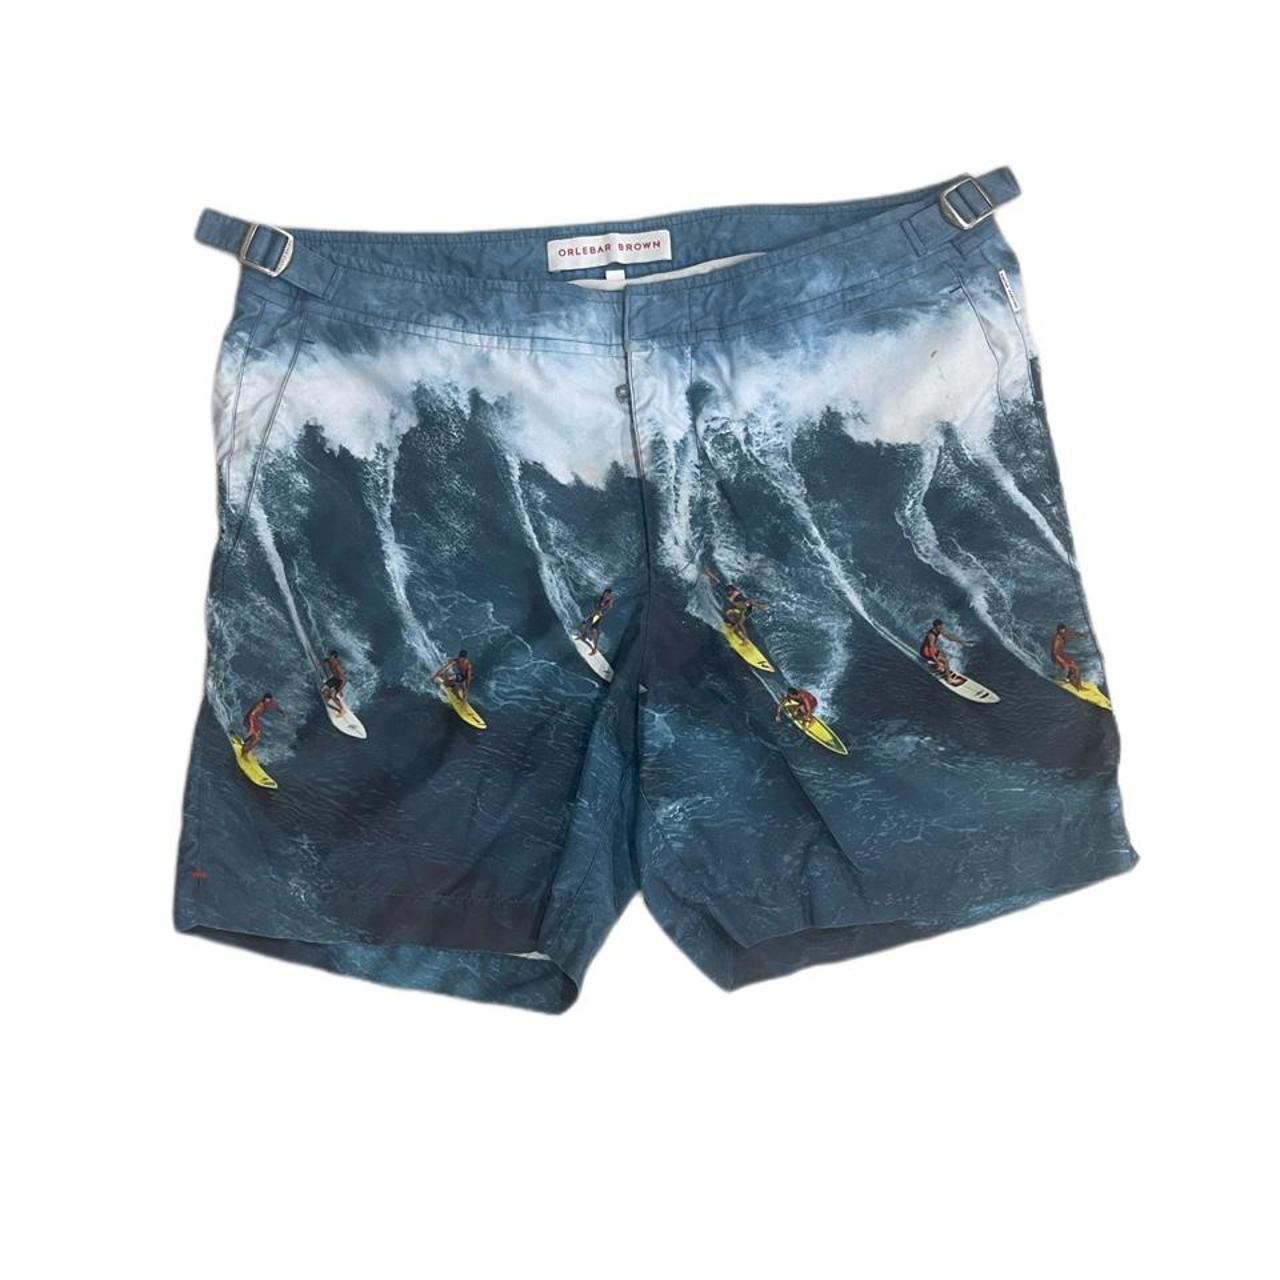 Orlebar Brown Men's Swim-briefs-shorts | Depop